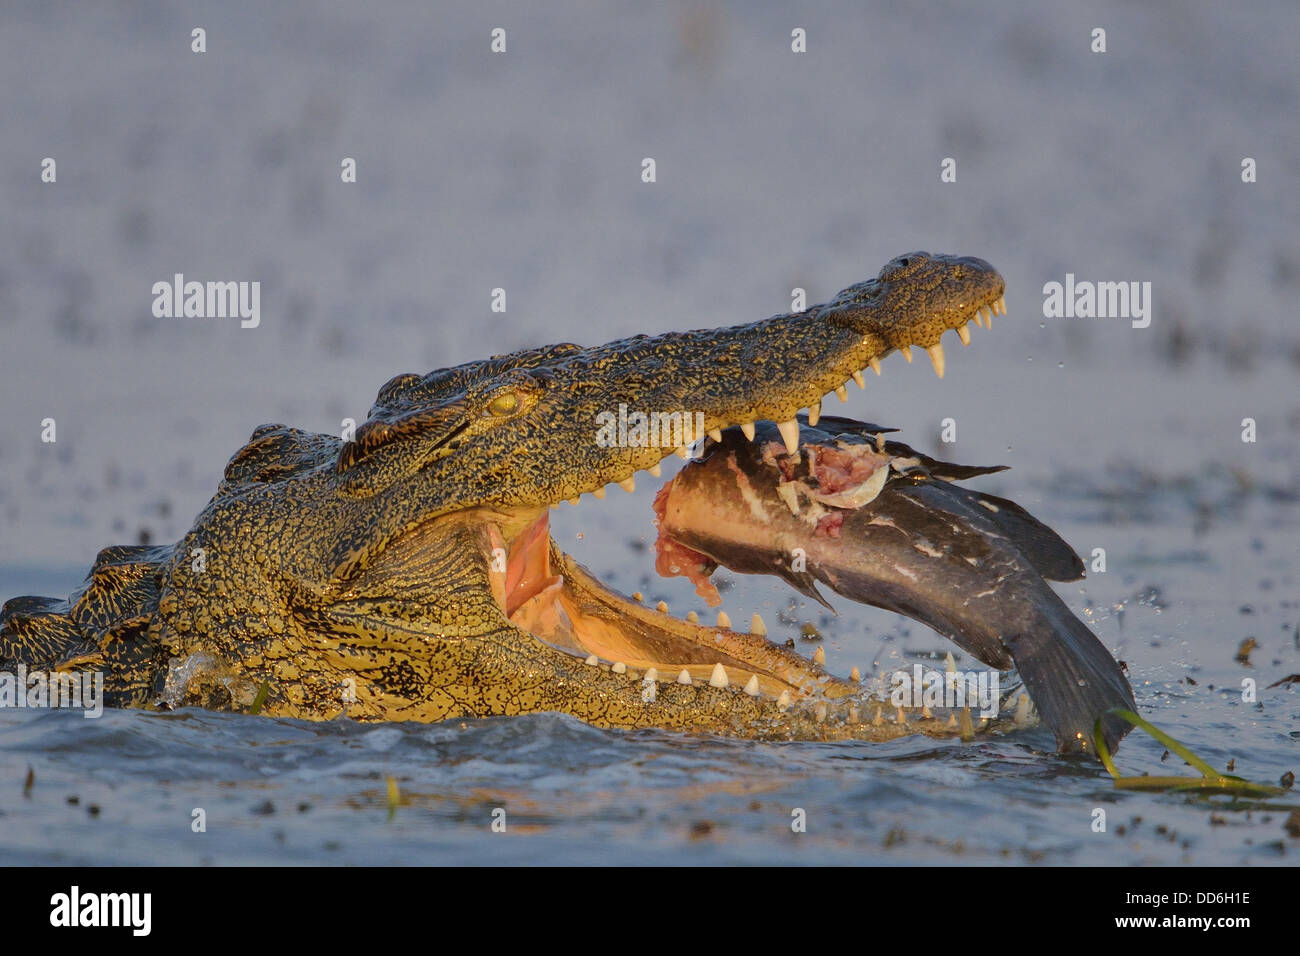 Le crocodile du Nil africains mangeant un poisson Banque D'Images